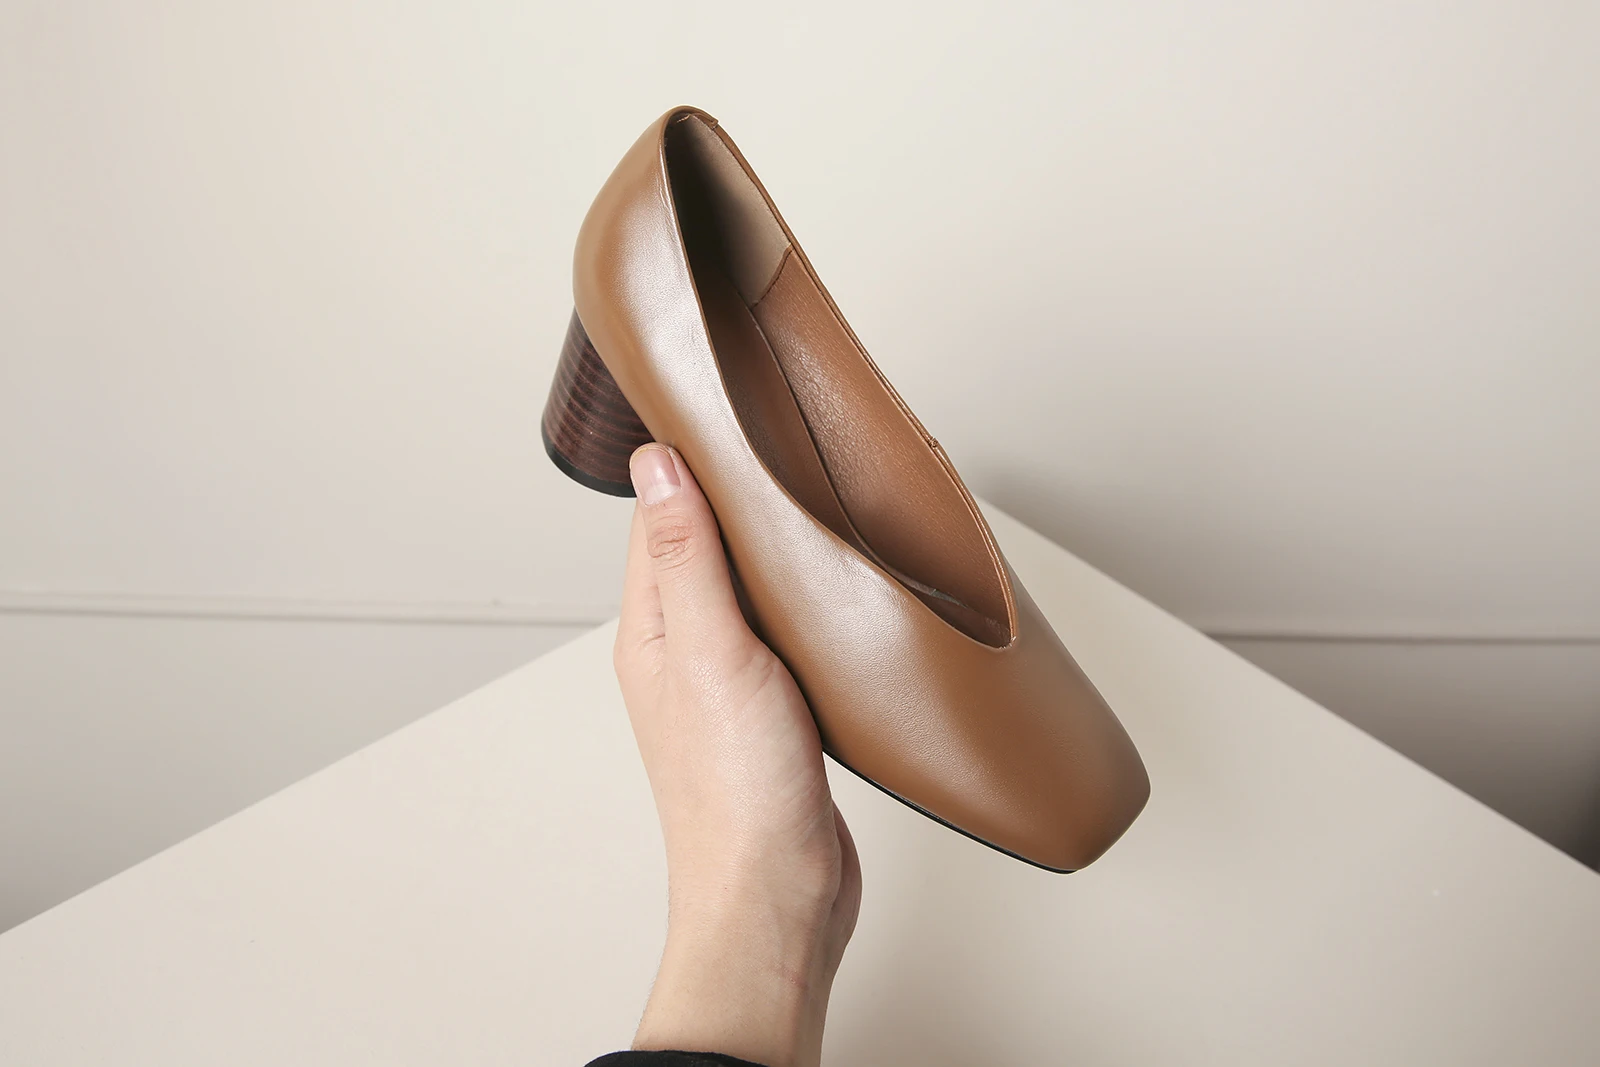 Salu/2019 г. женские туфли-лодочки из натуральной кожи простые и модные весенние офисные туфли на высоком квадратном каблуке с квадратным